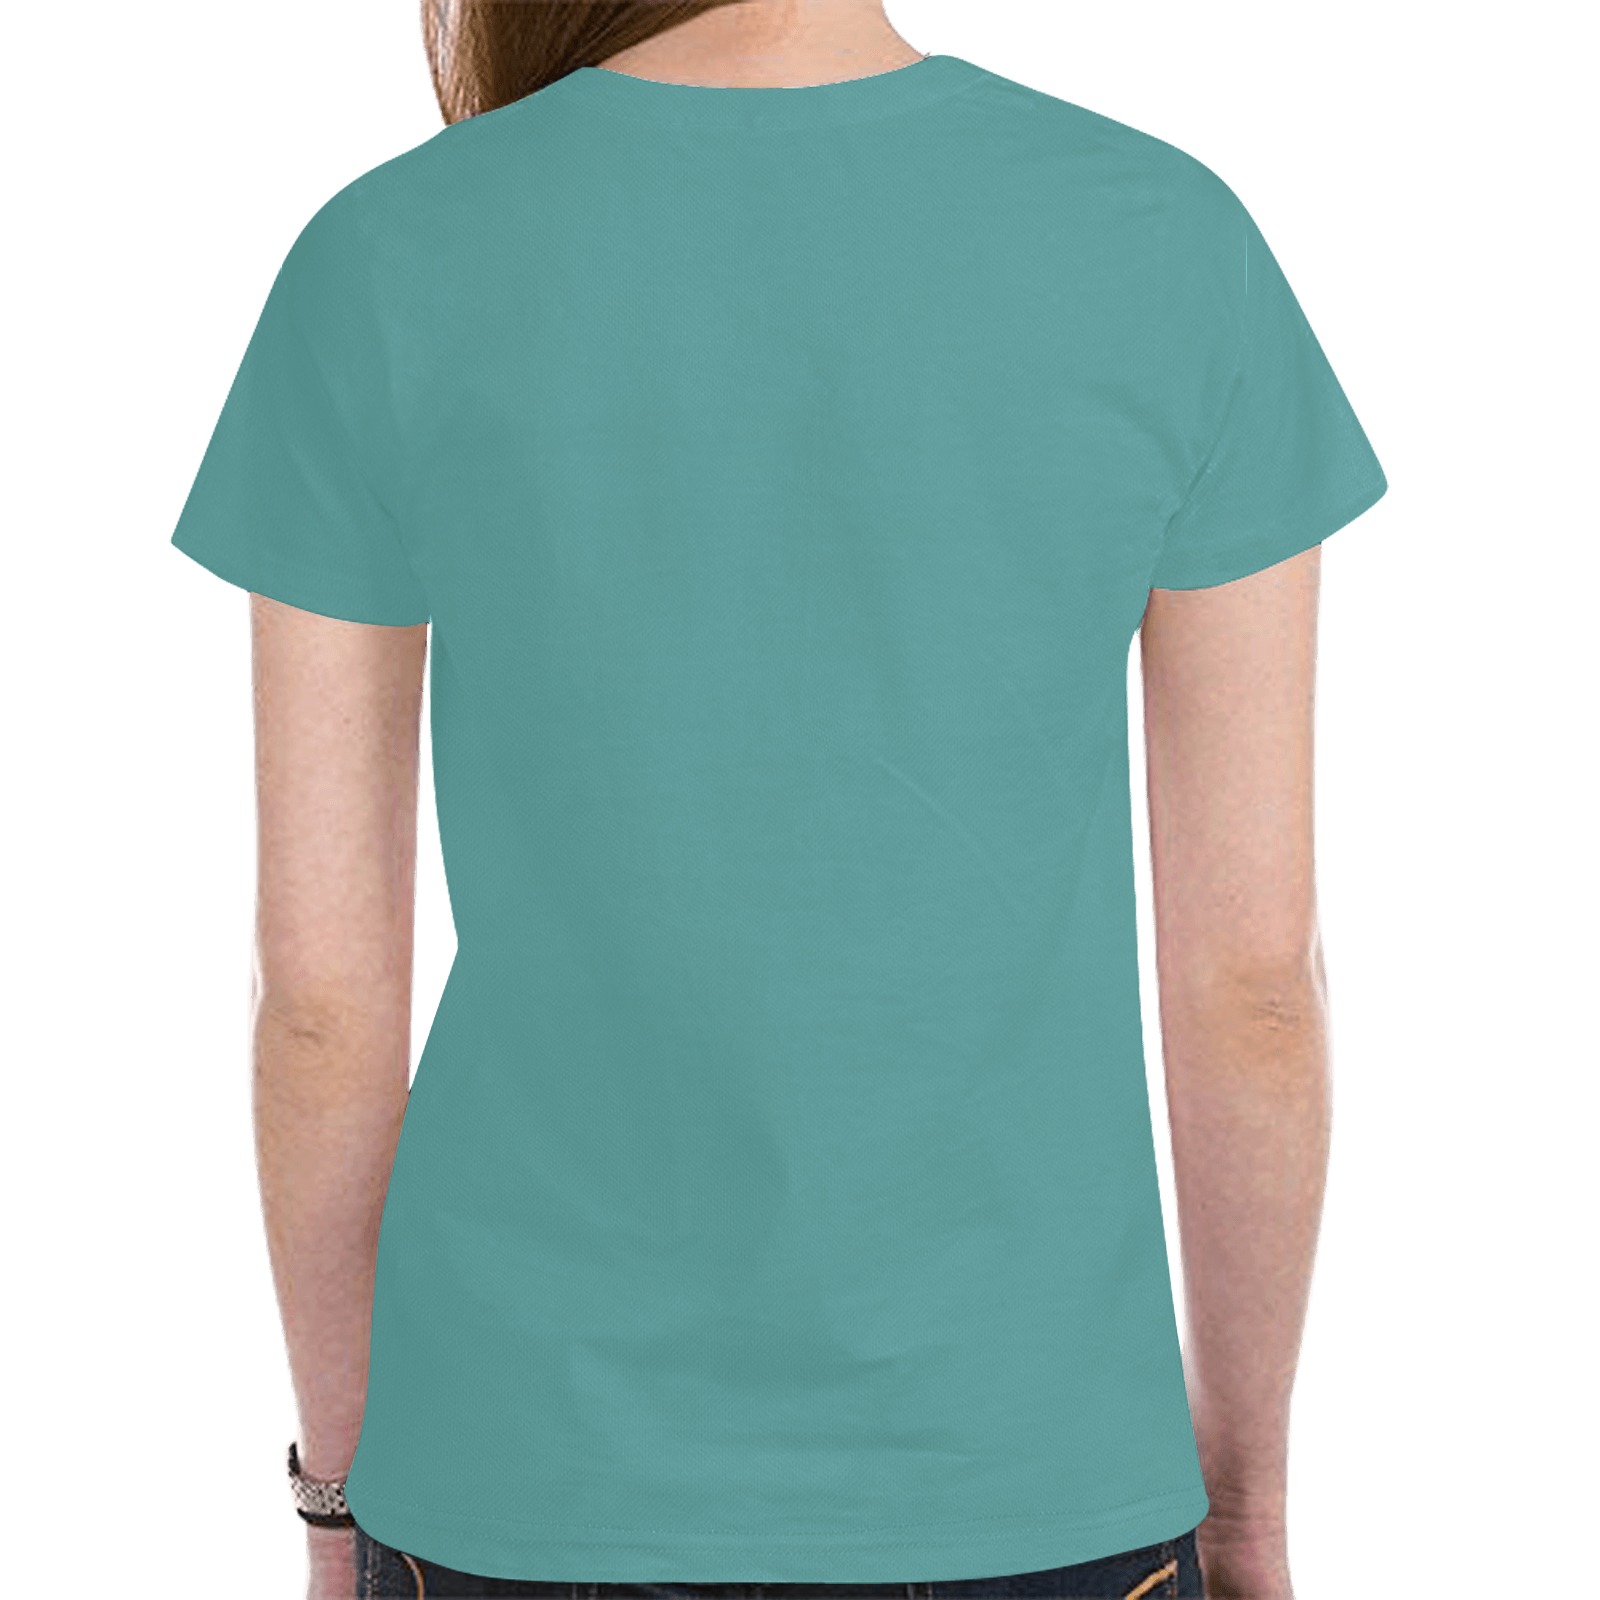 Golden Sugar Skull Jade Green New All Over Print T-shirt for Women (Model T45)